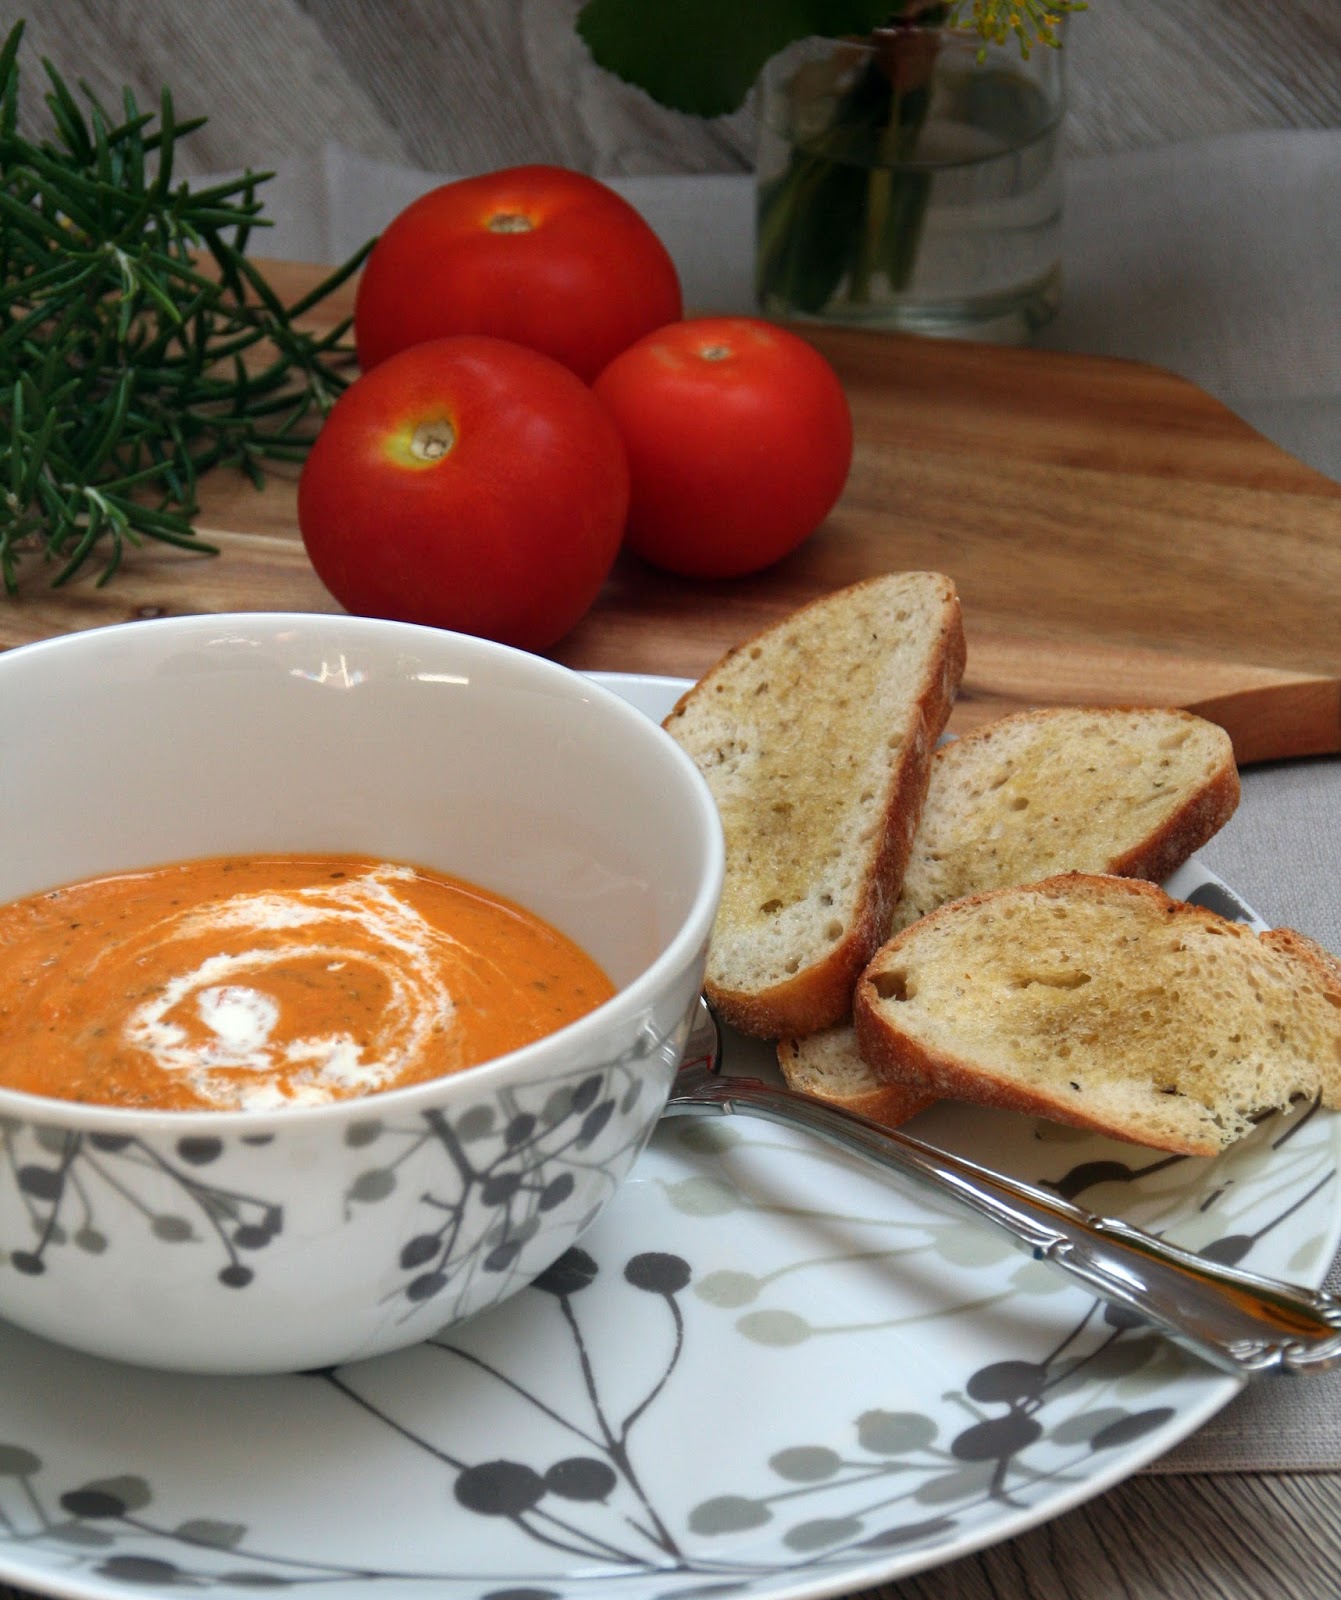 Wir sagen zum Sommer bye bye - mit einer Ofen-Tomaten-Zucchini-Suppe ...